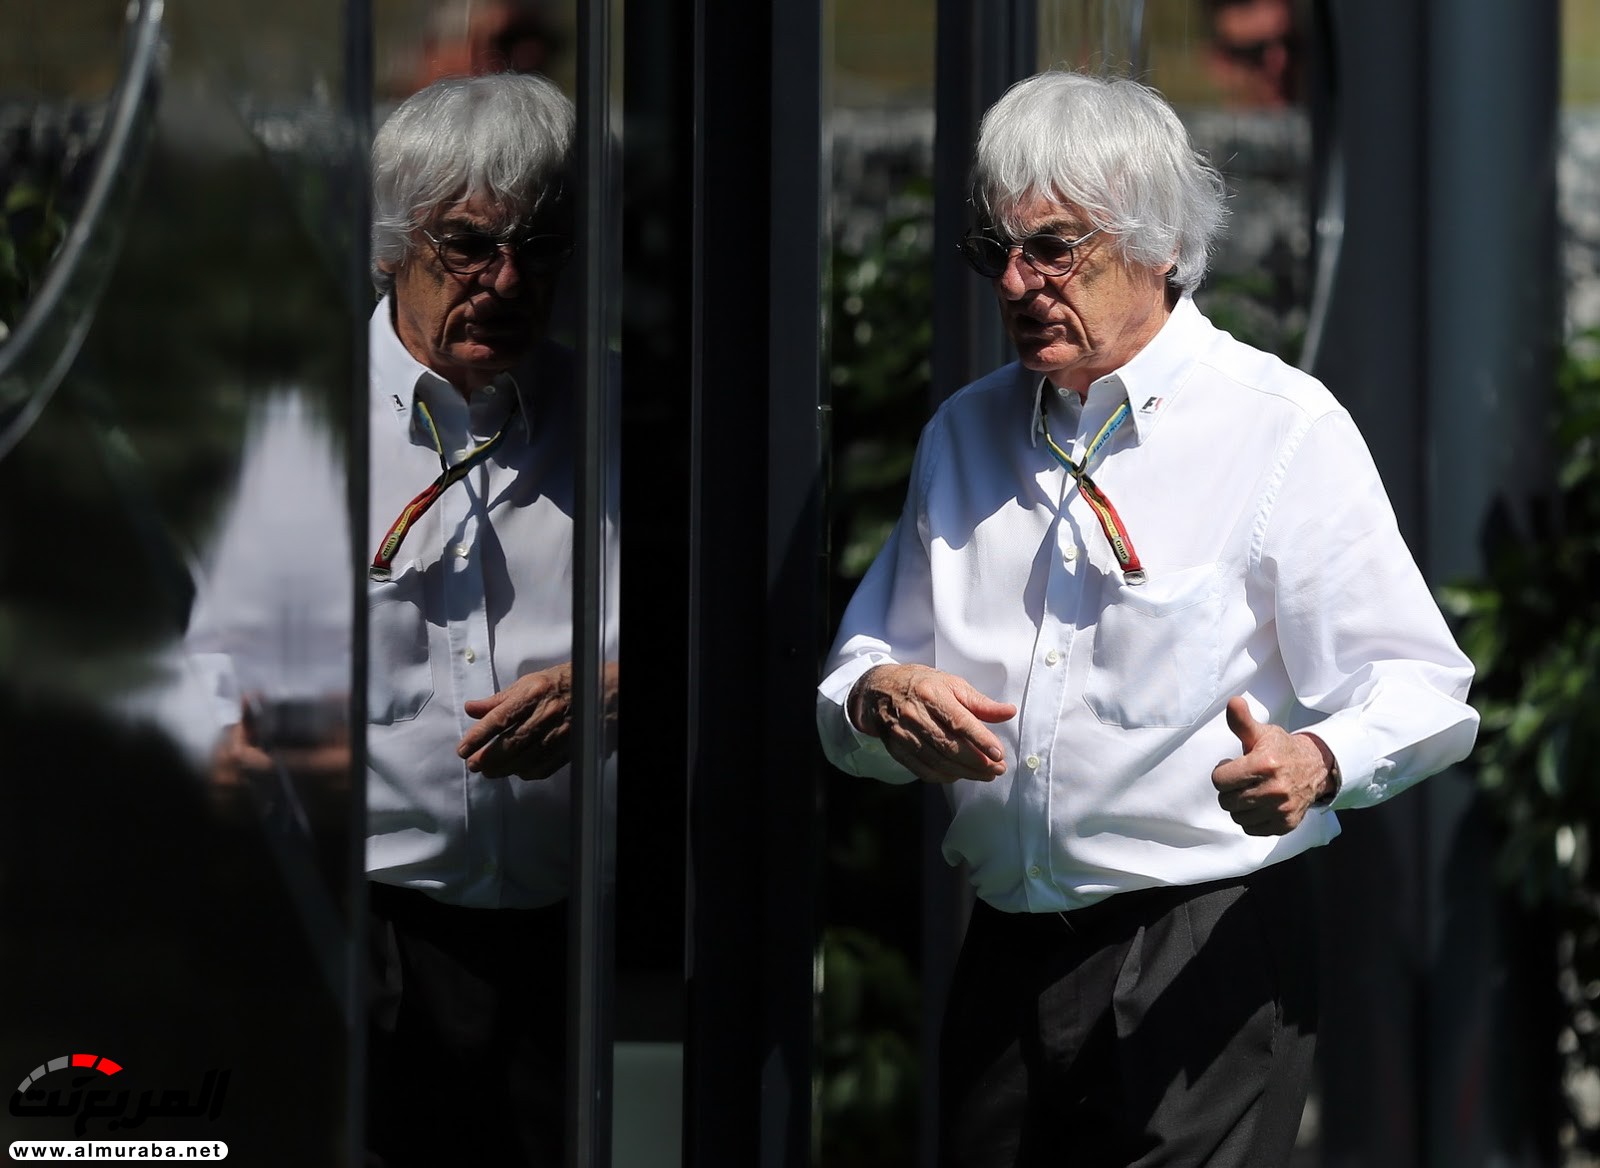 "بيرني إكليستون" رئيس فورمولا 1 يجبر على التخلي عن منصبه Formoula 1 2